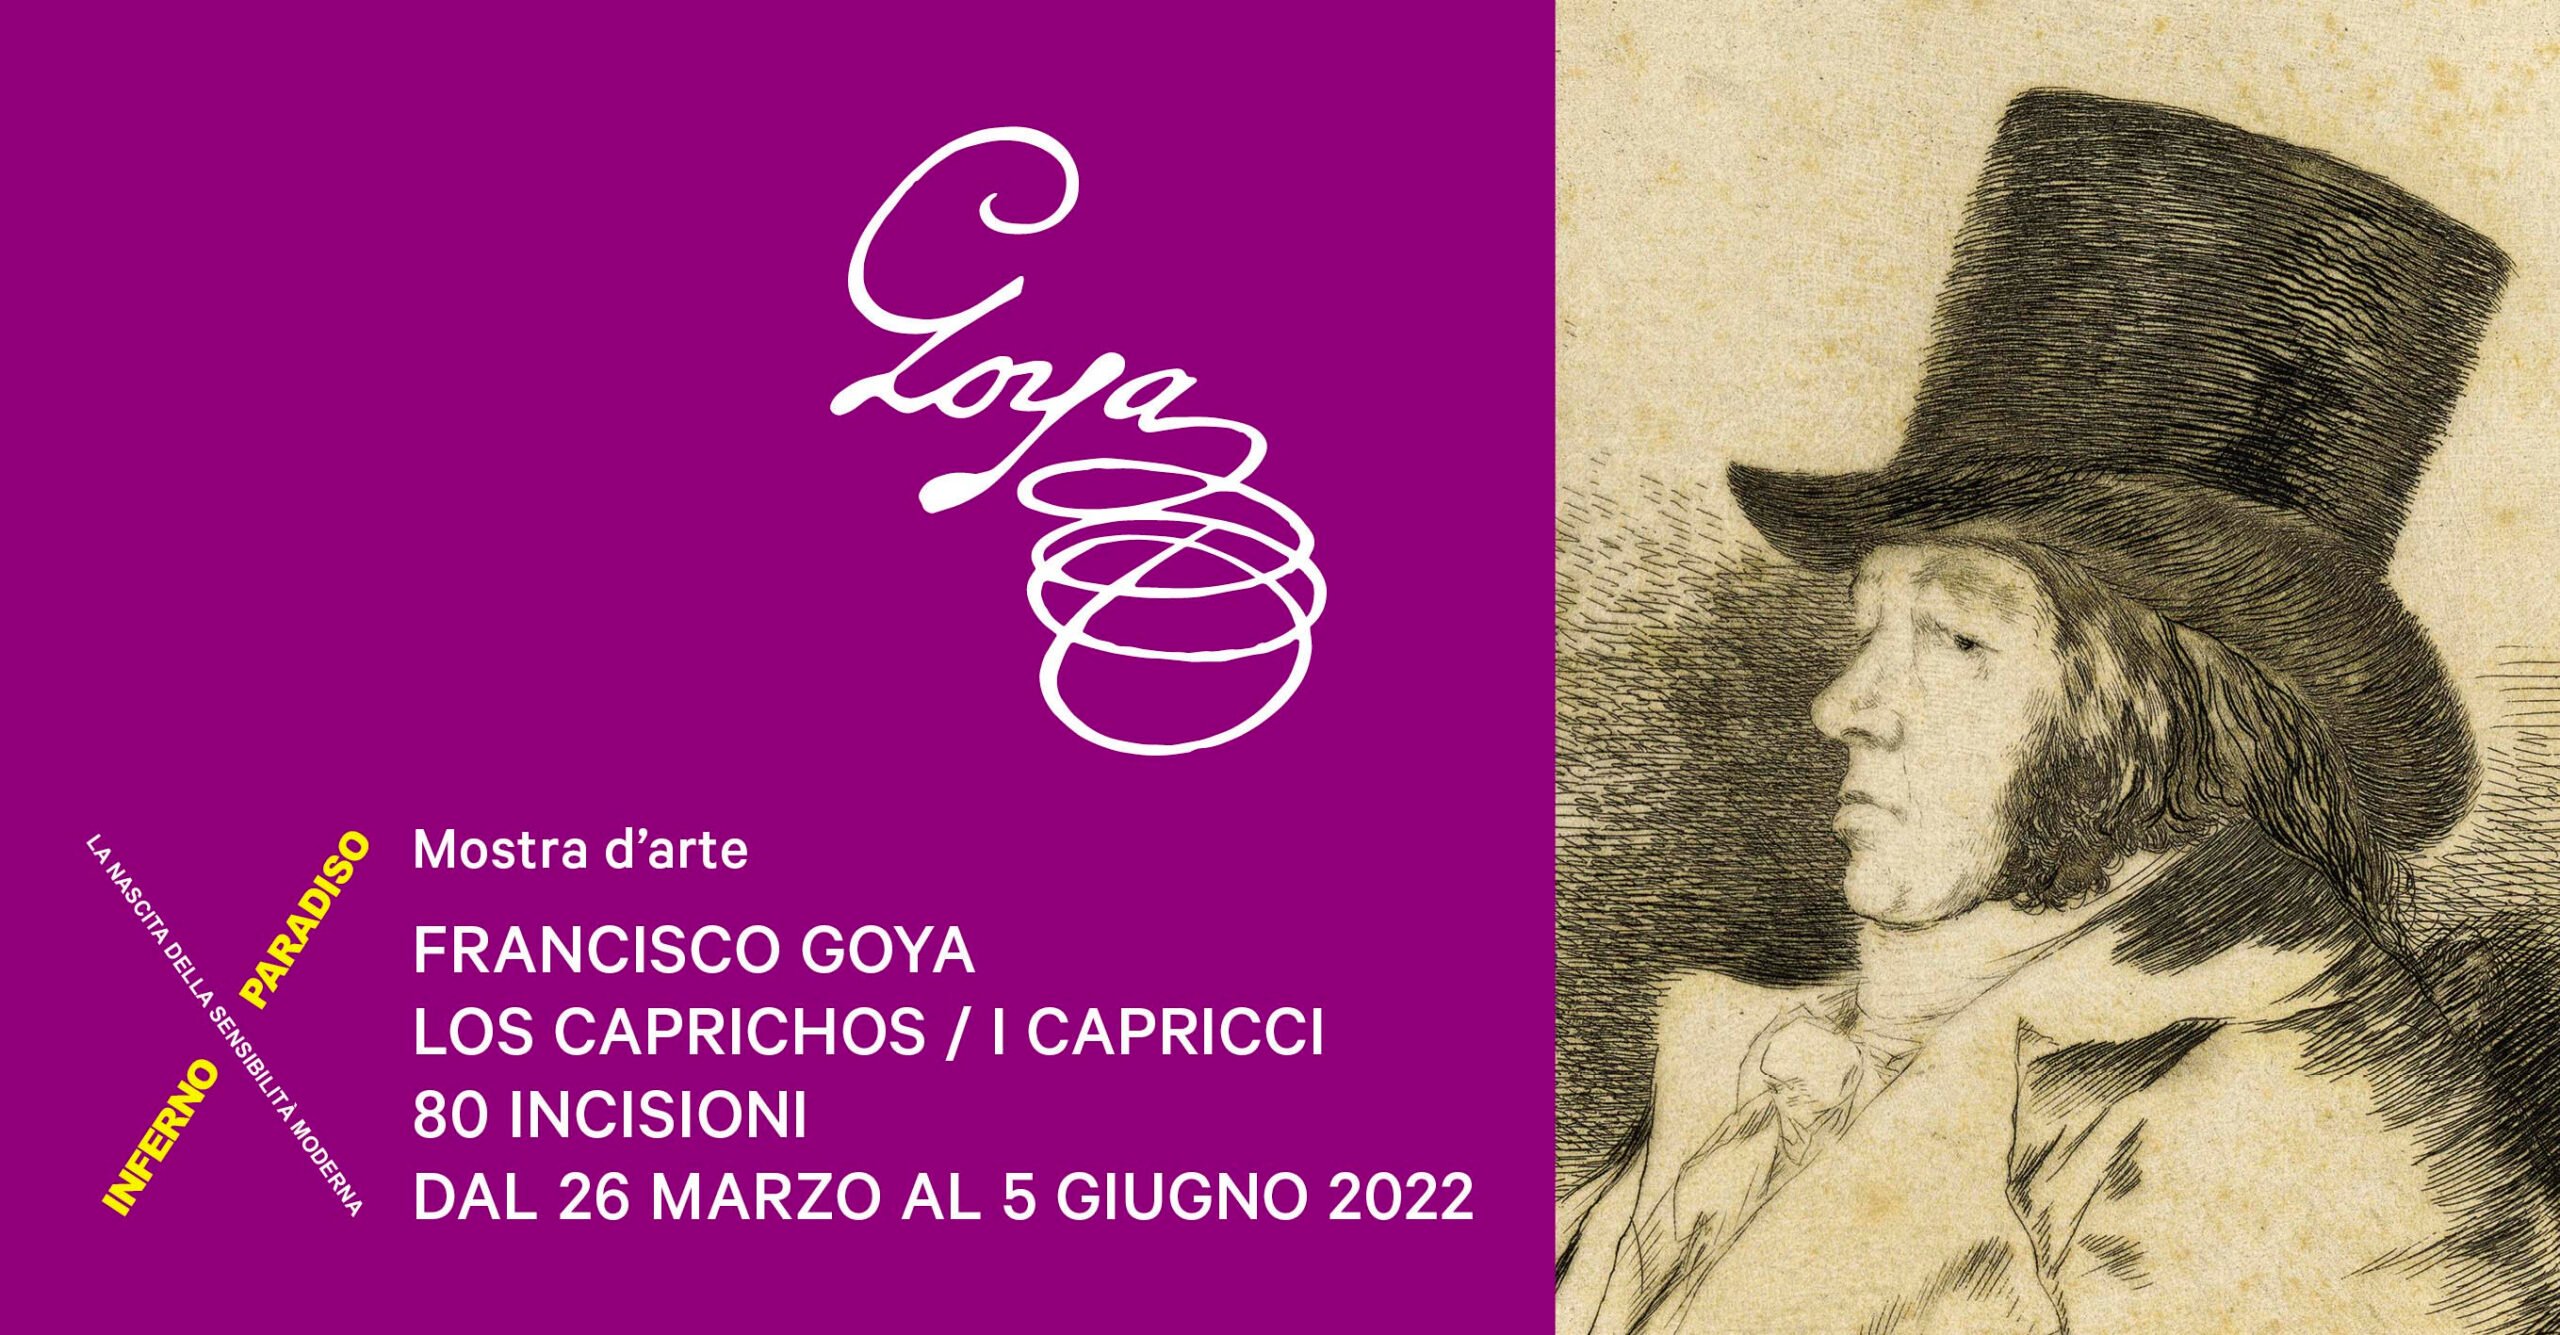 Francisco Goya - Los Caprichos